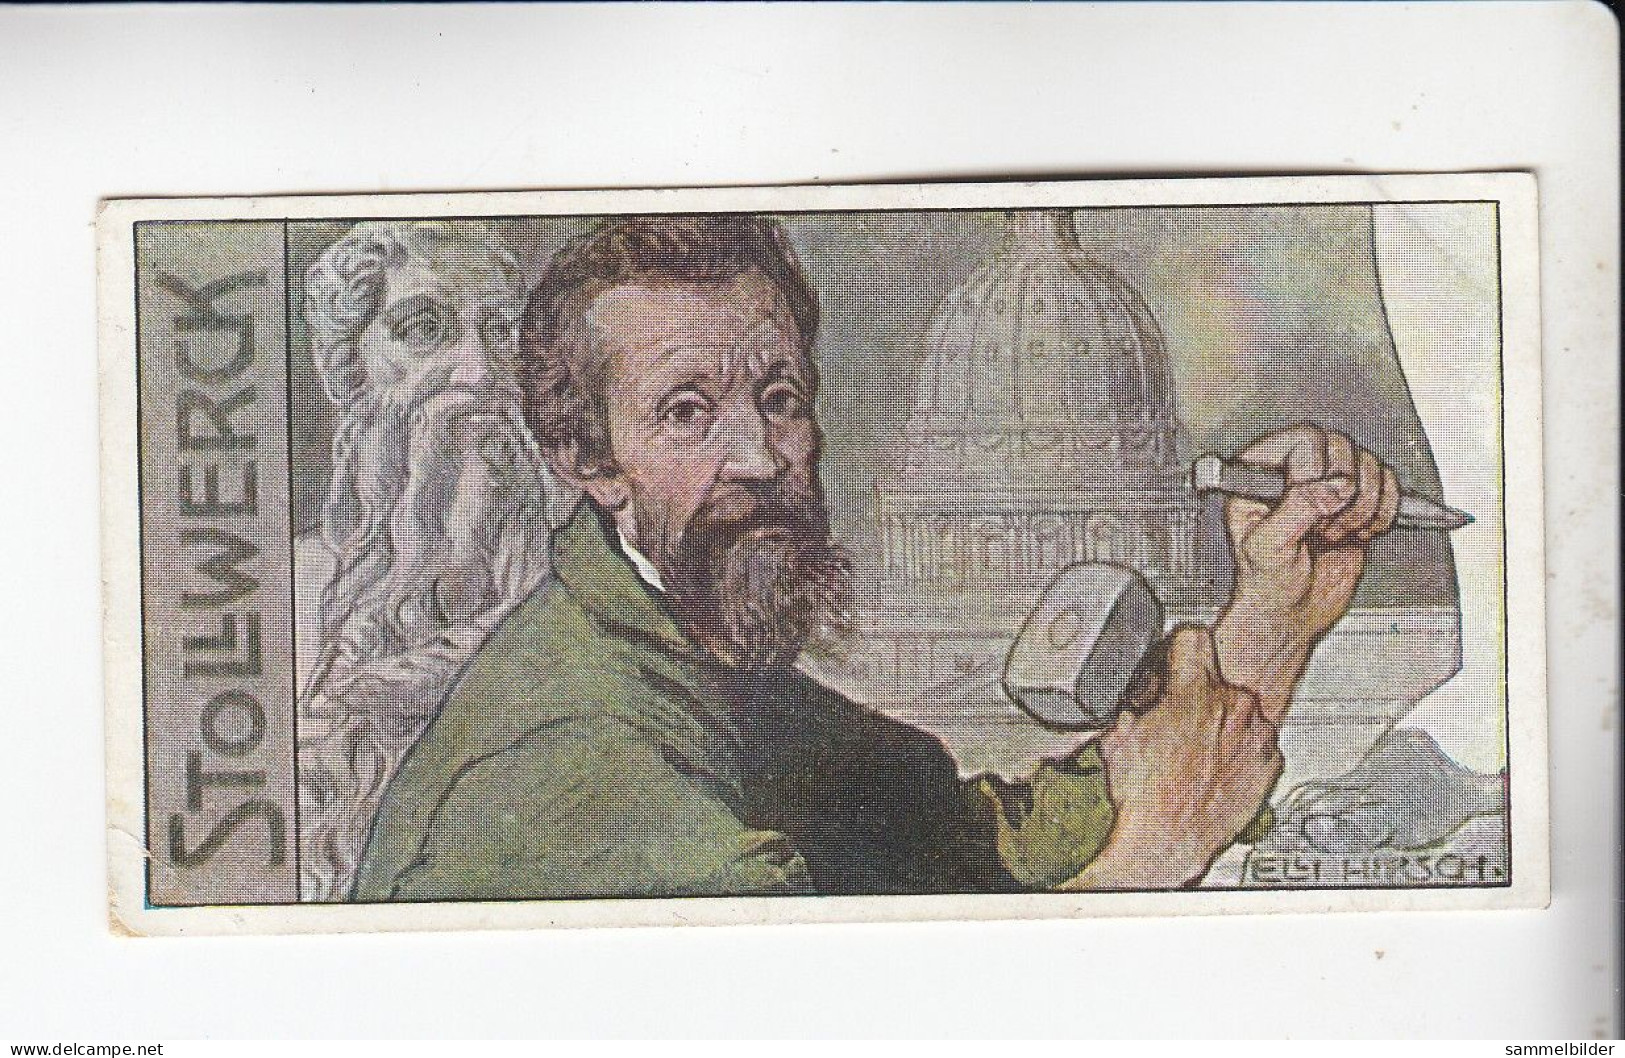 Stollwerck Album No 10 Glanzzeit Der Italienischen Malerei Michelangelo       Gruppe 426 #3 Von 1908 - Stollwerck